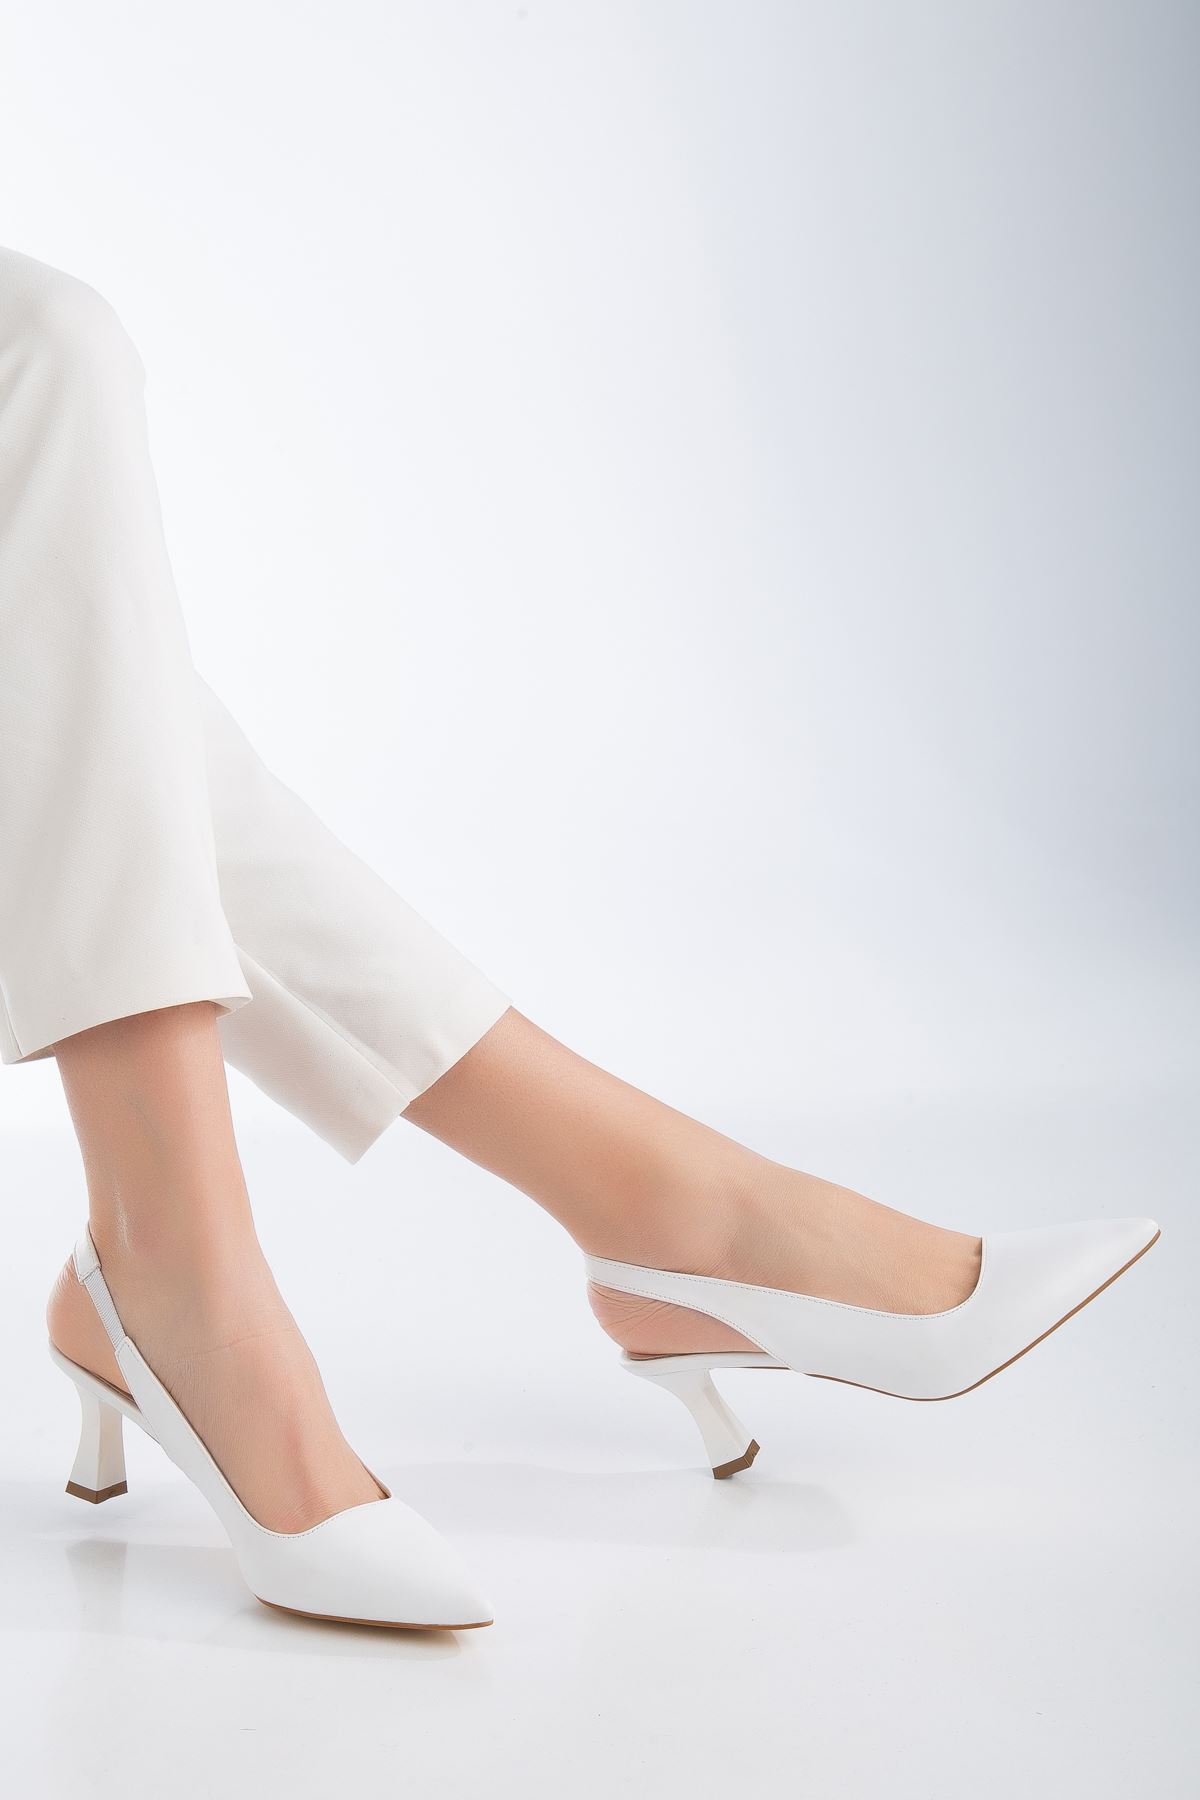 Sevra Topuklu Ayakkabı Beyaz